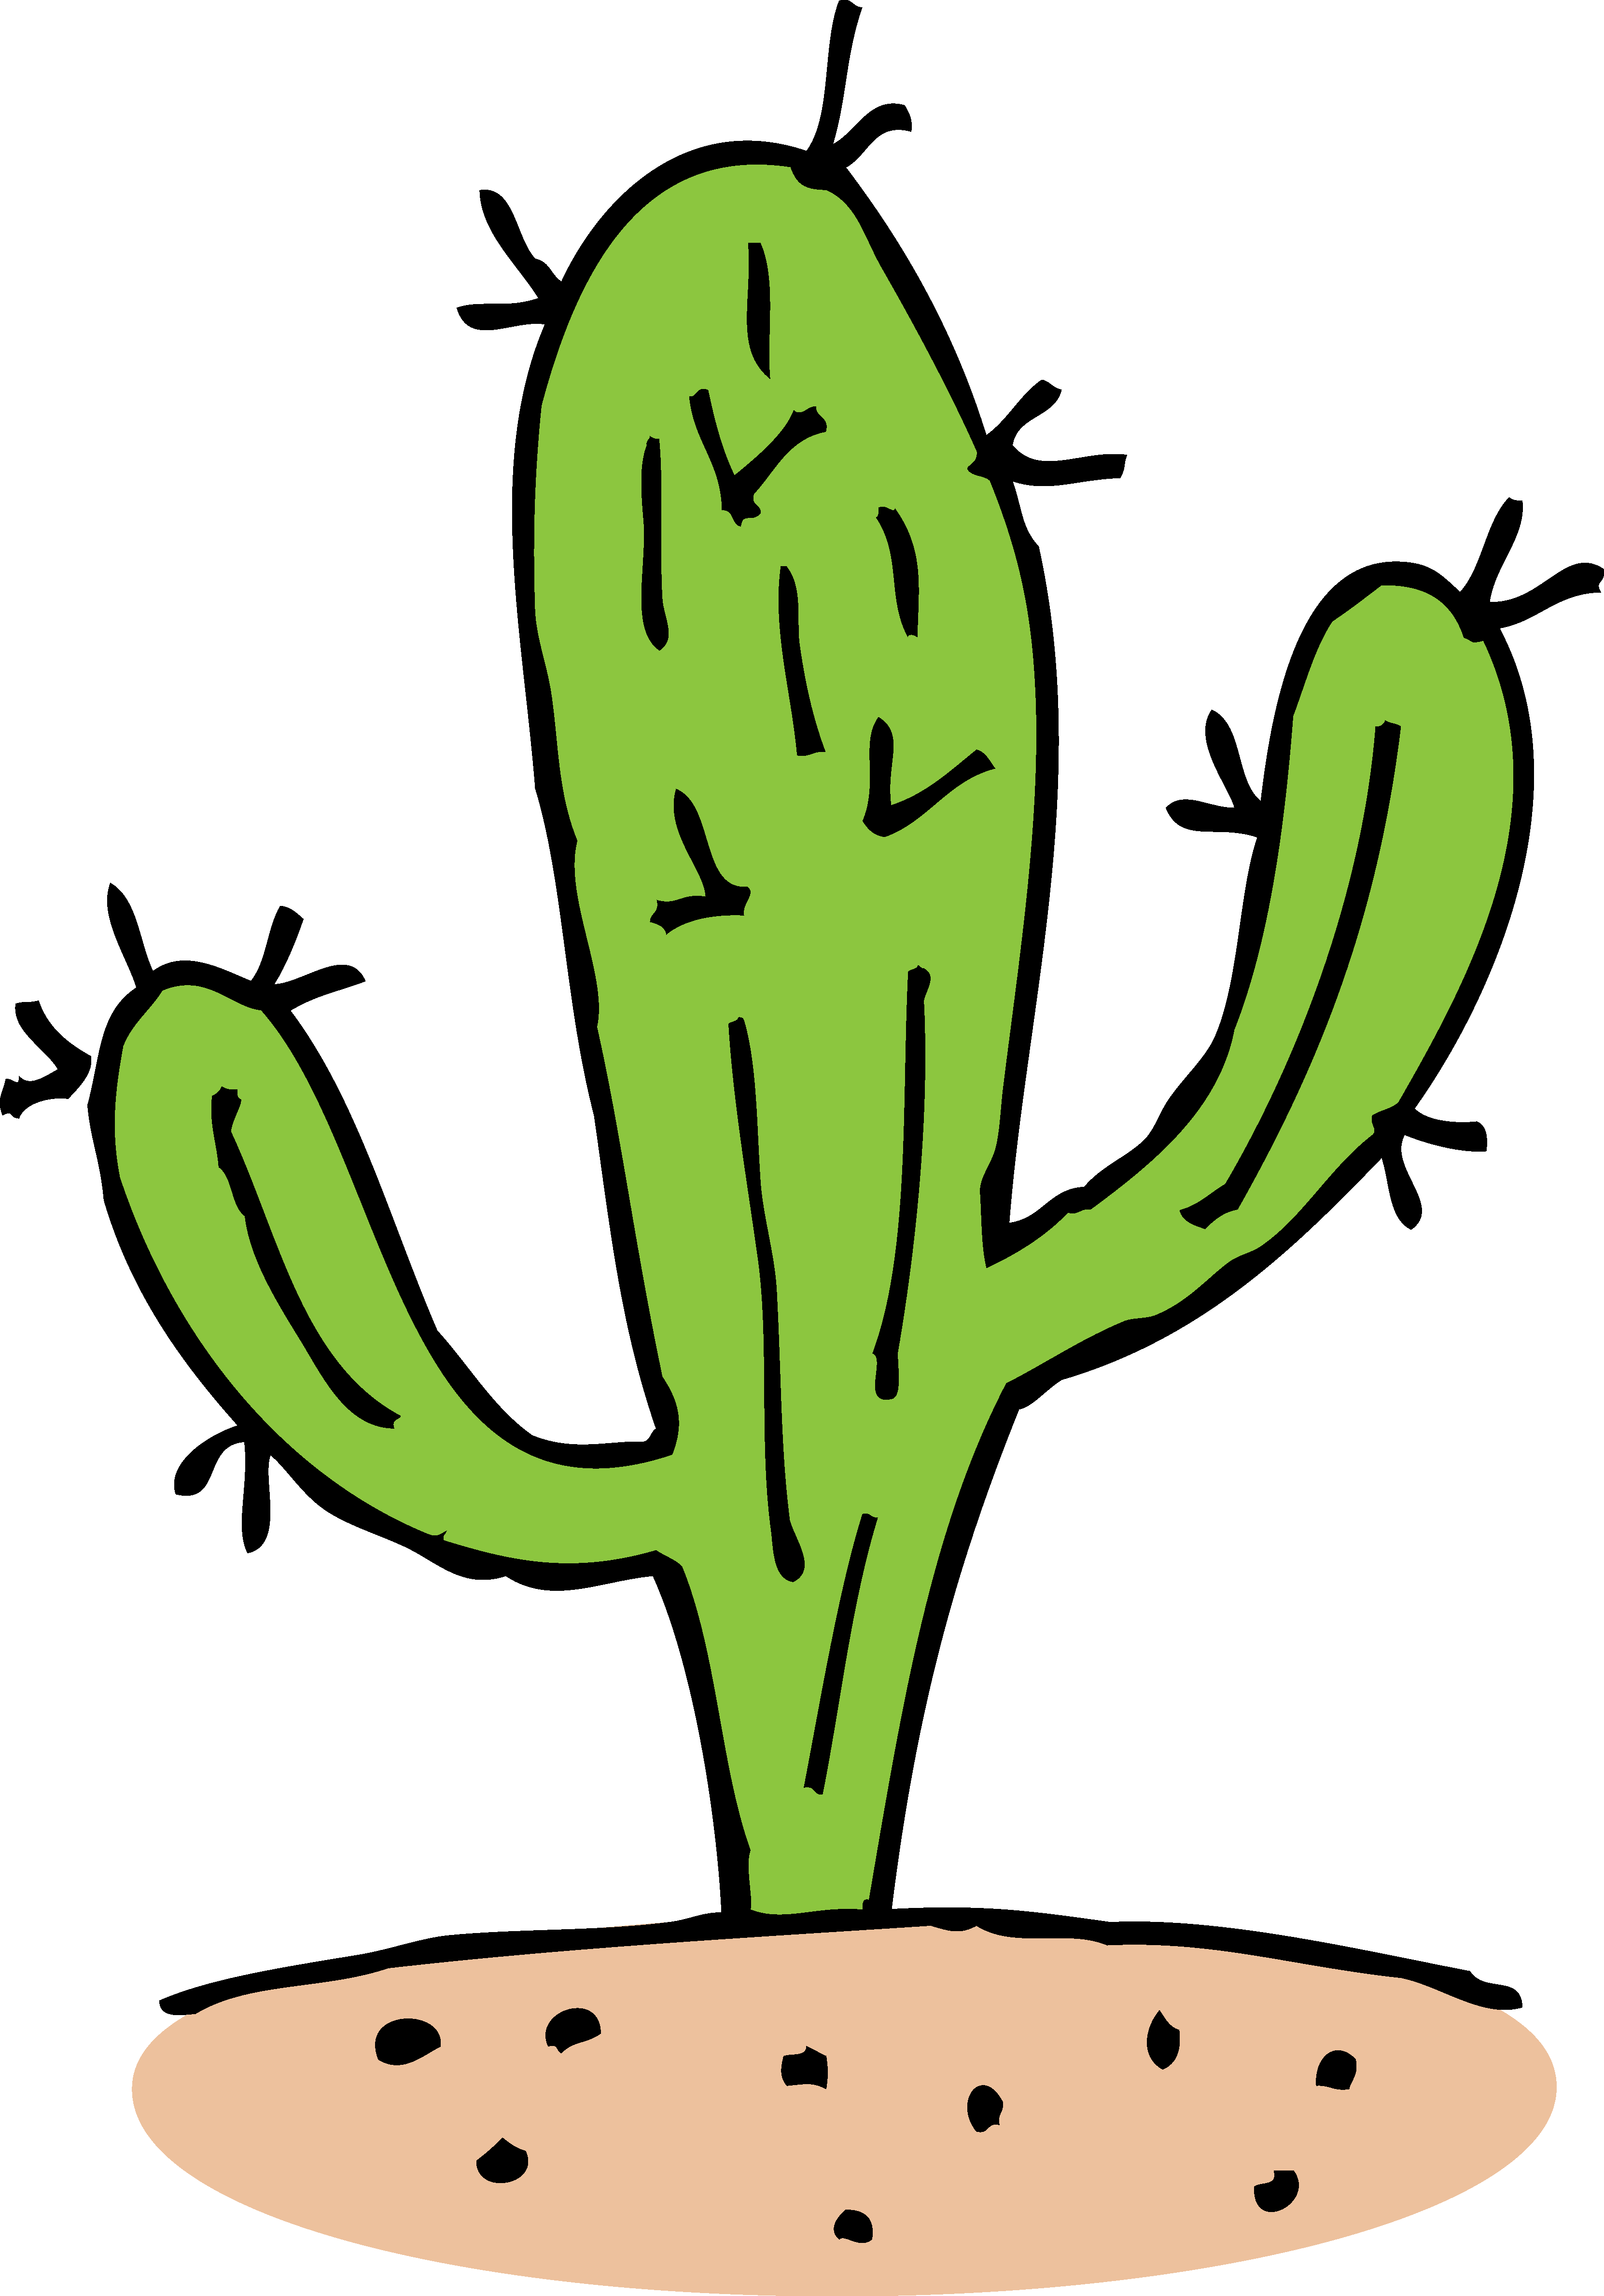 Cactus Cartoon Images